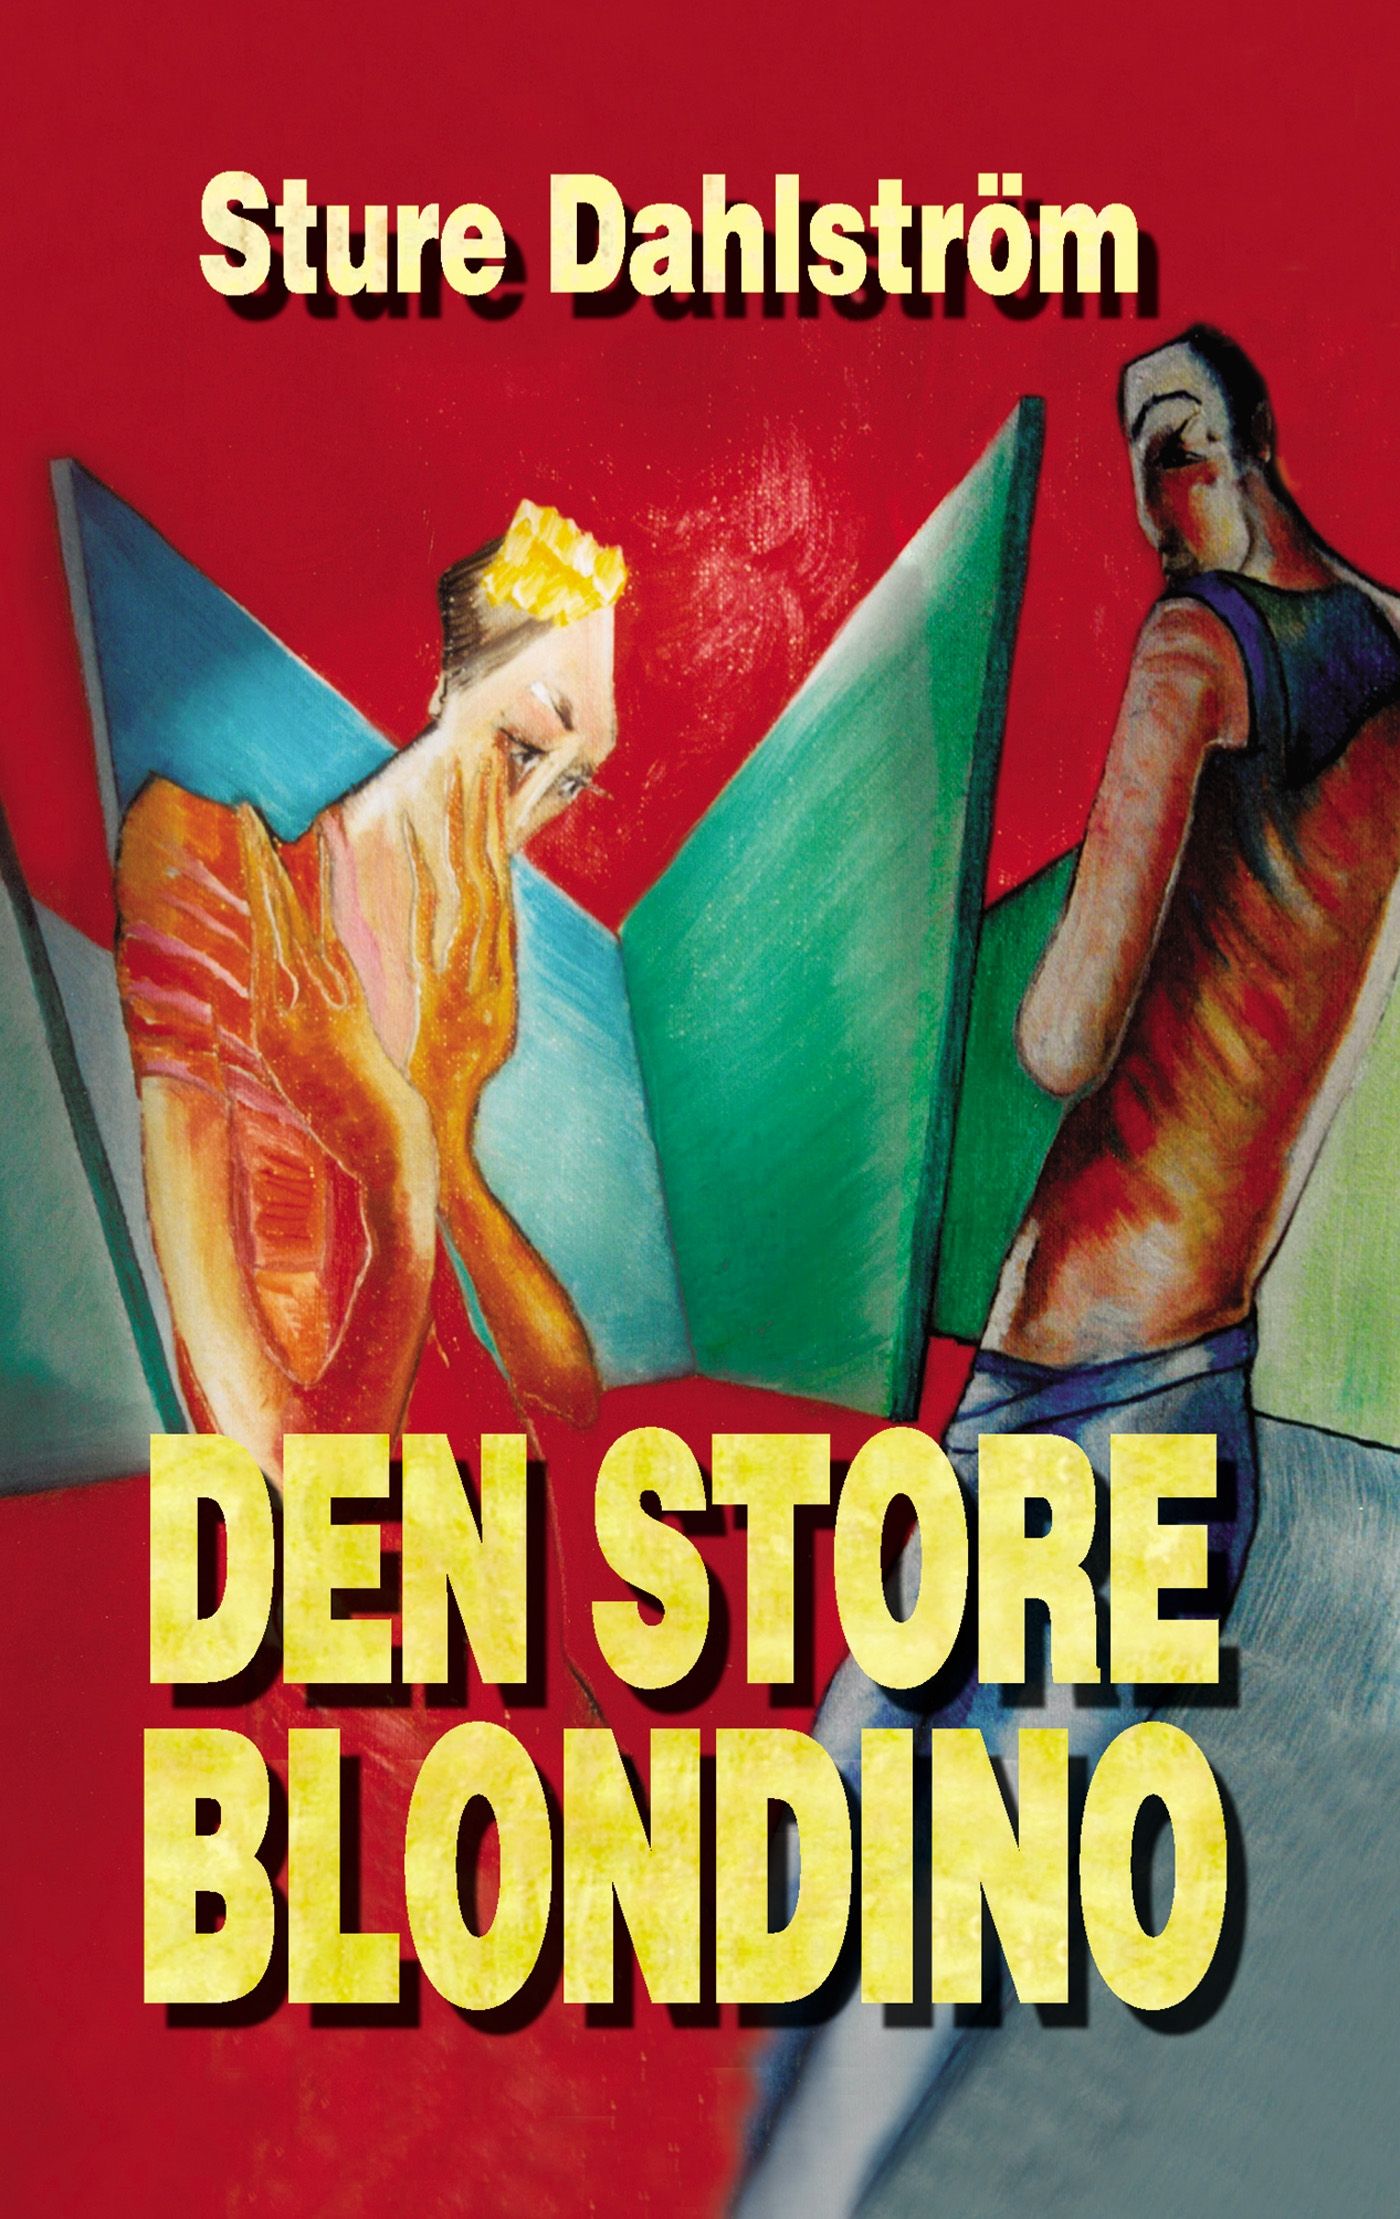 Den store Blondino, e-bog af Sture Dahlström